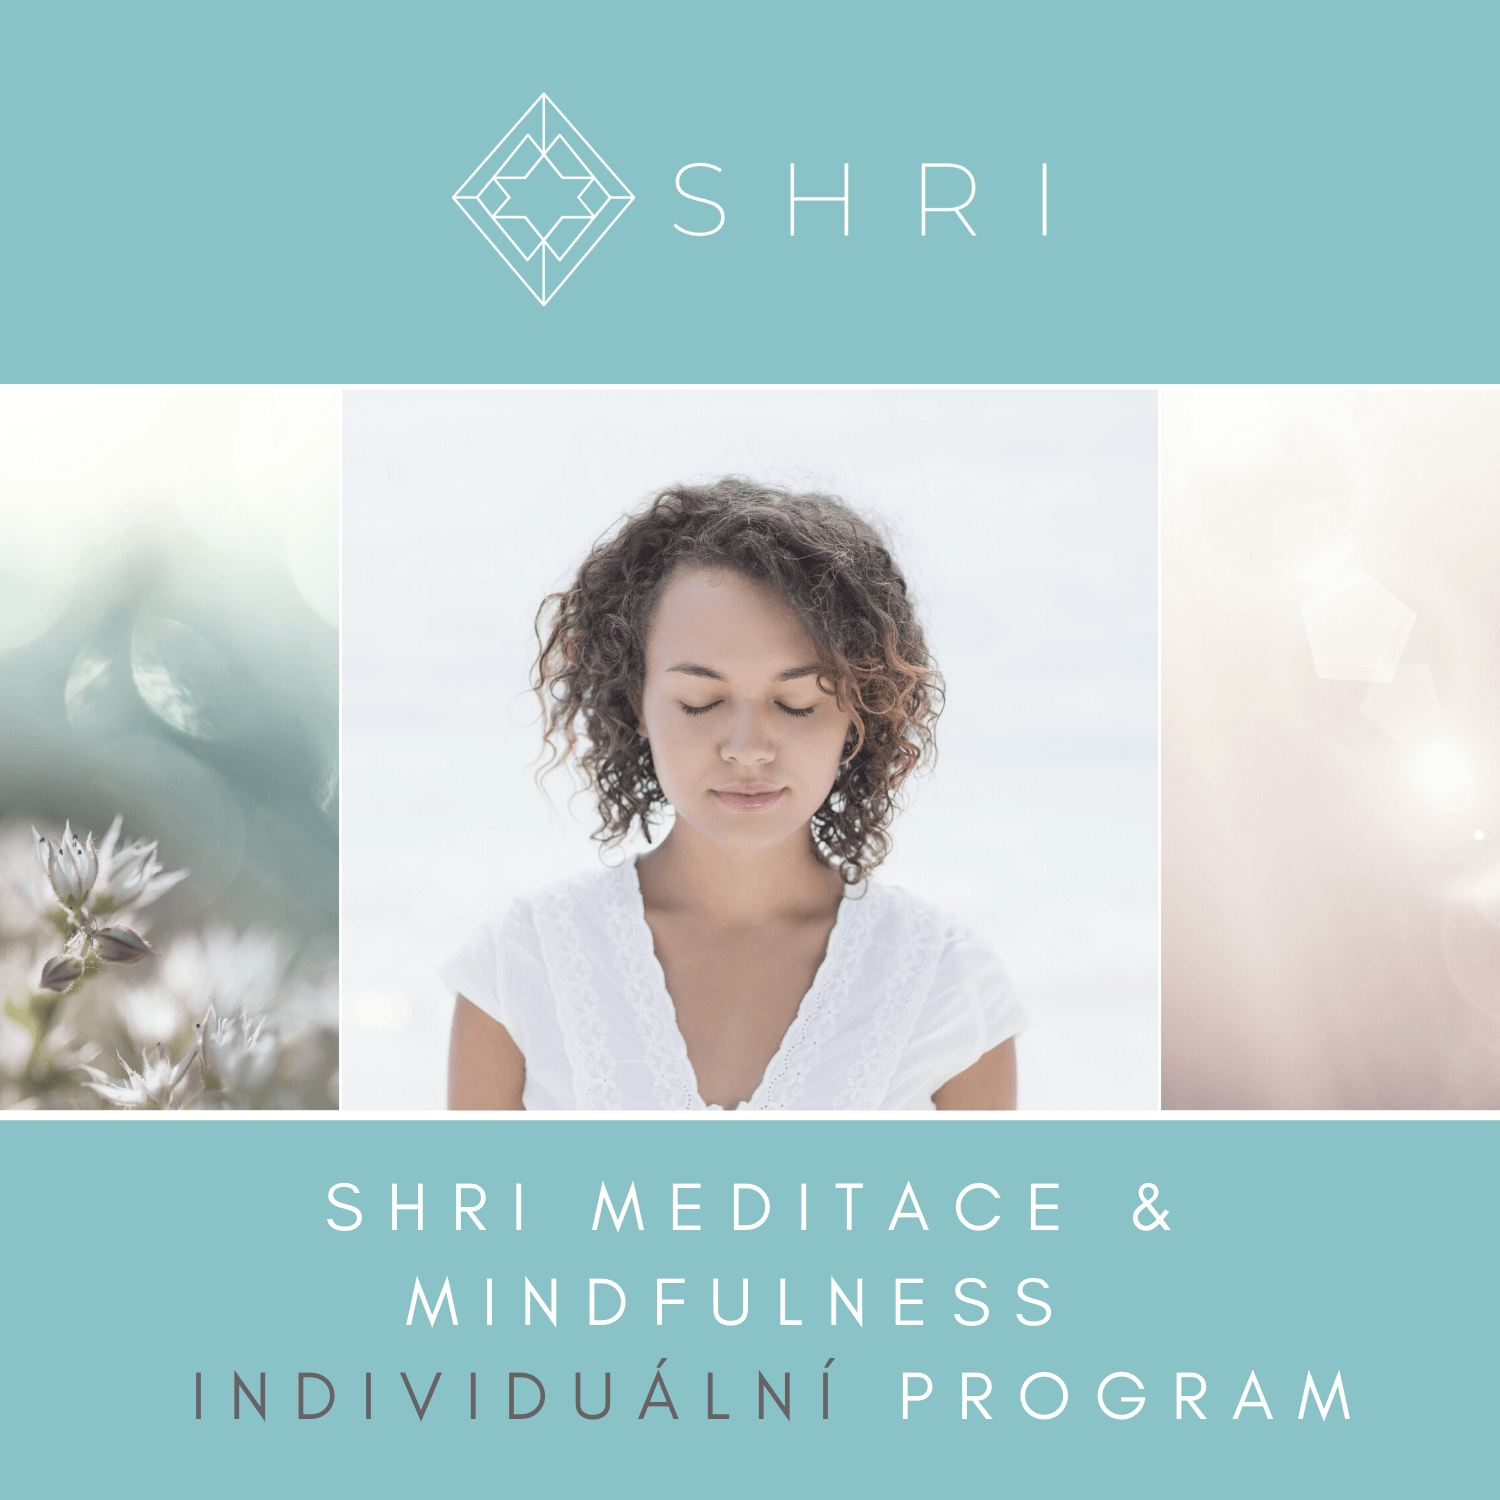 SHRI Meditace & Mindfulness individuální program